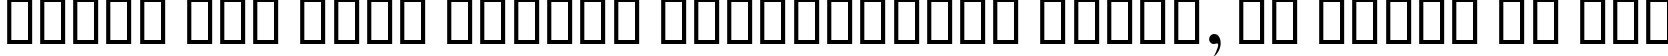 Пример написания шрифтом B Bardiya текста на русском